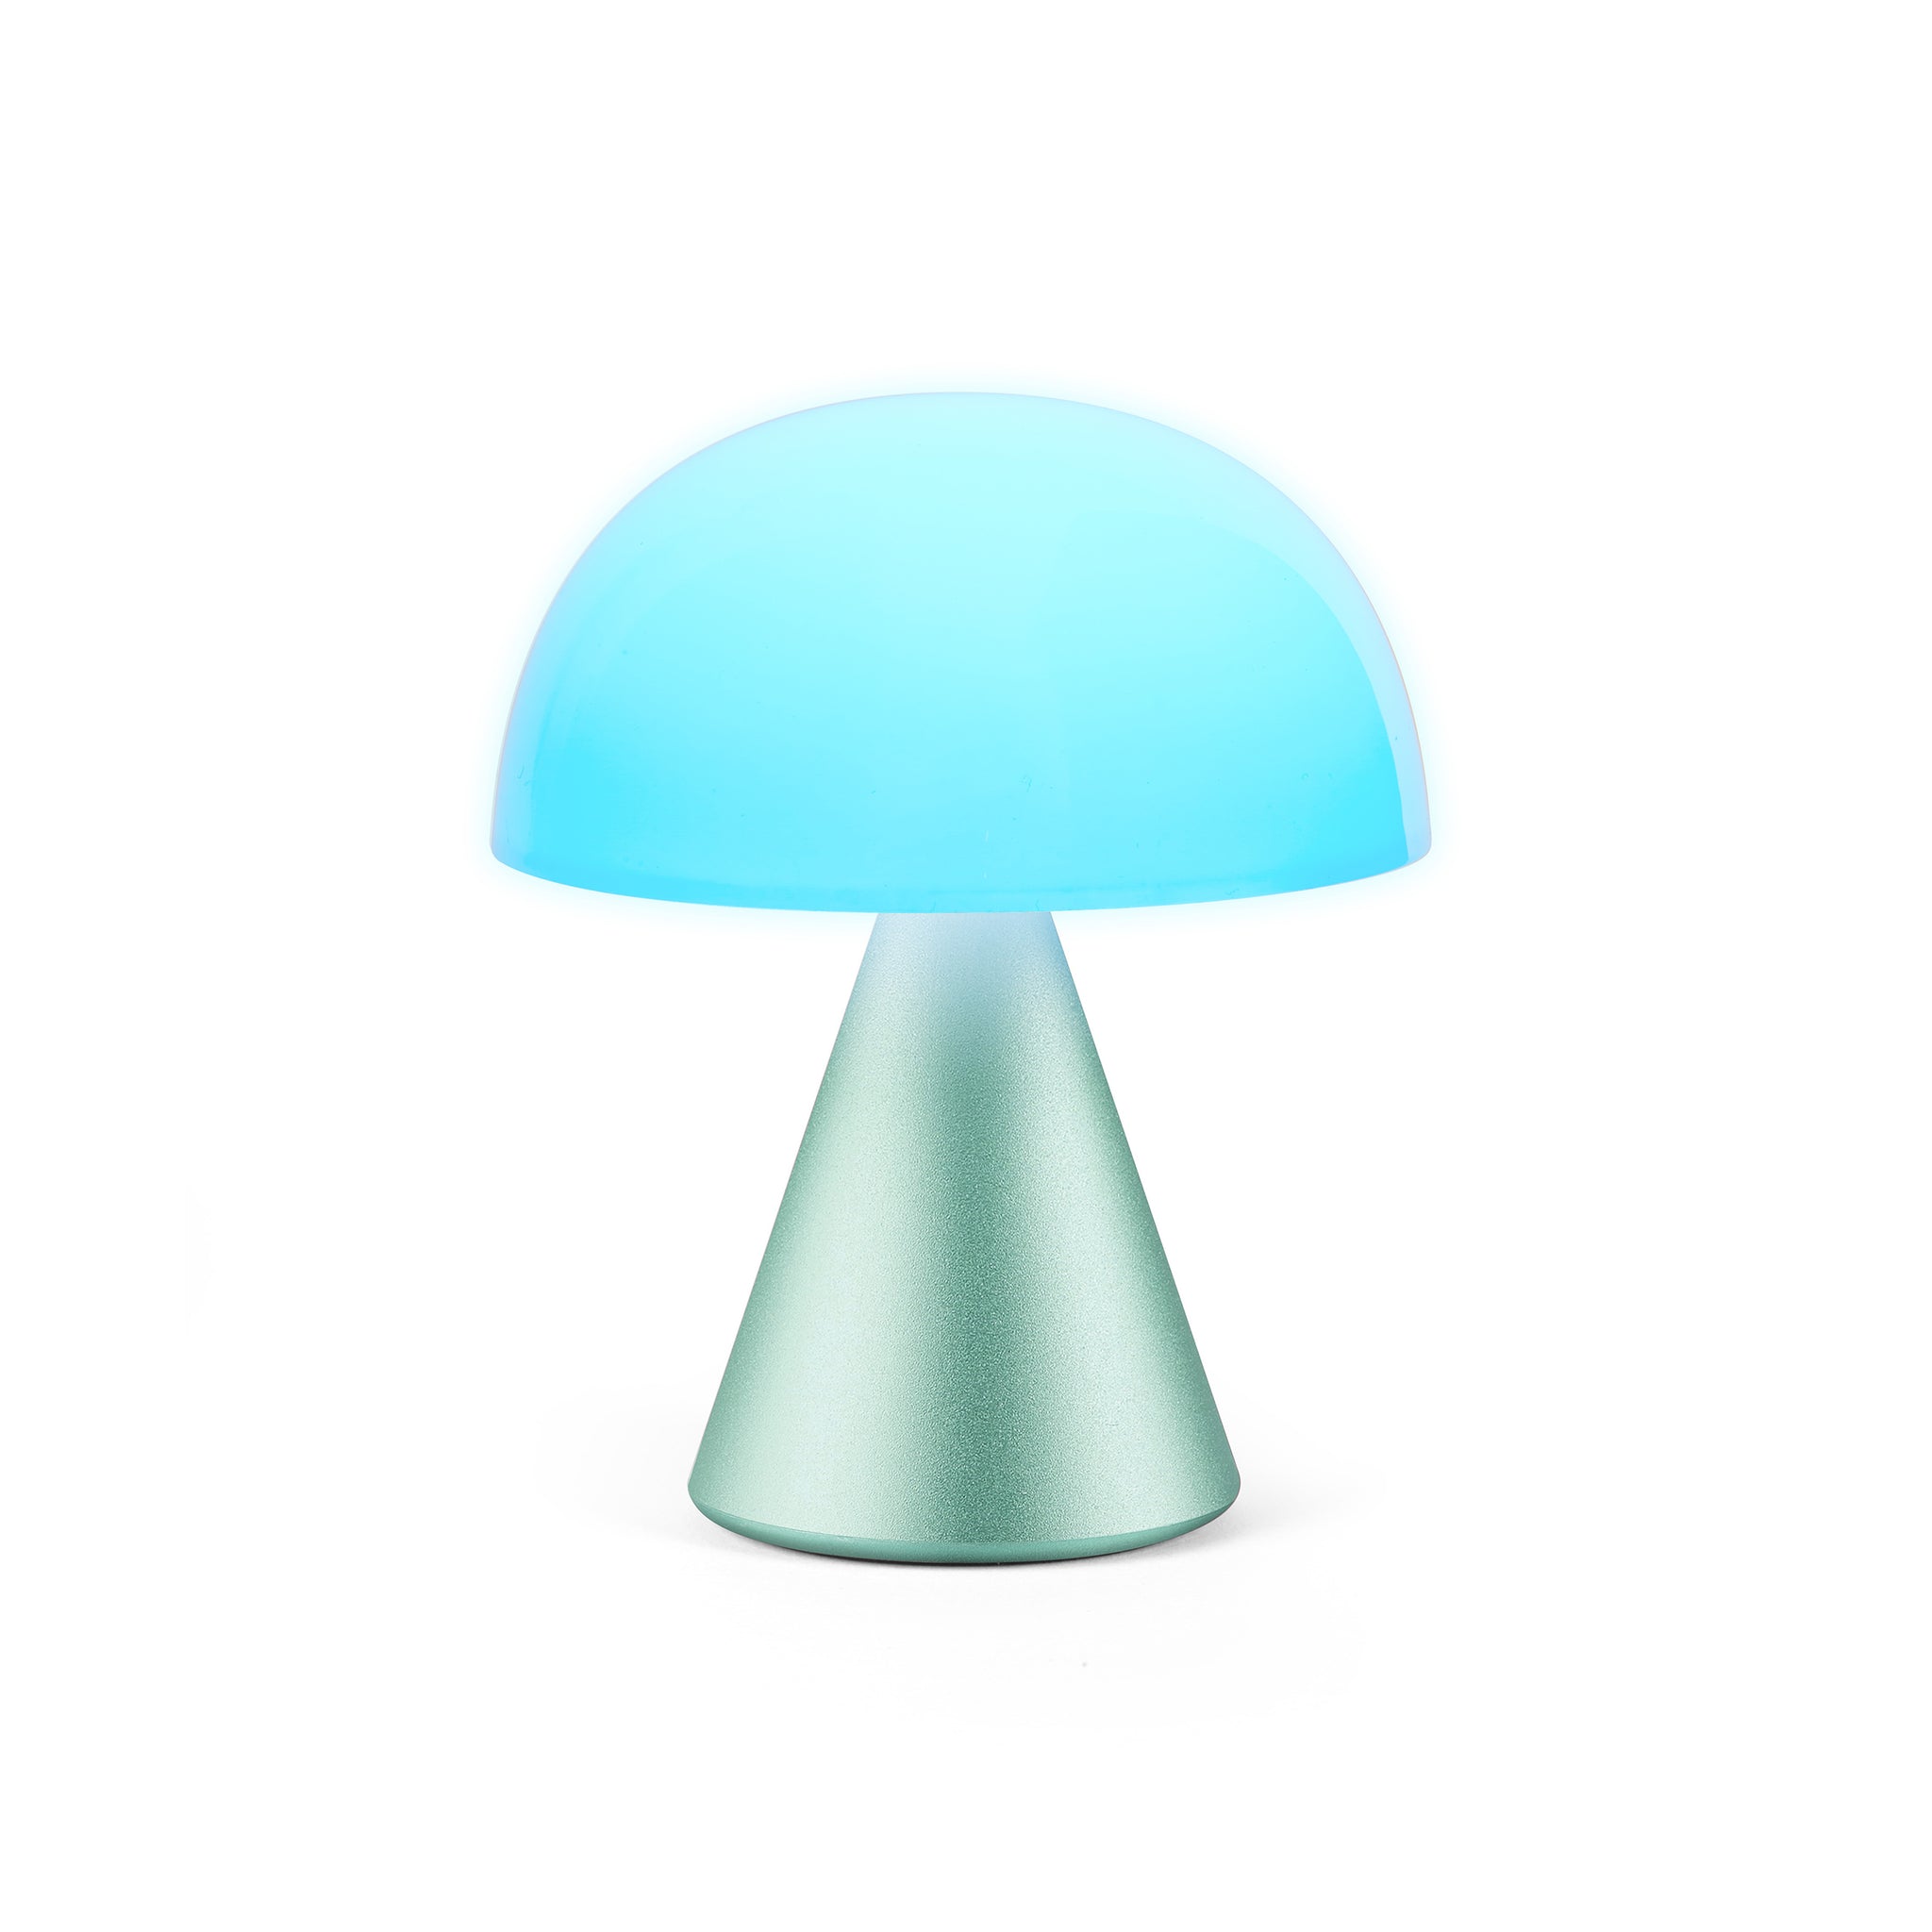 Lexon Mina Medium Mint Groen│LH64M1│Oplaadbare LED-Lamp│vooraanzicht met blauw licht aan